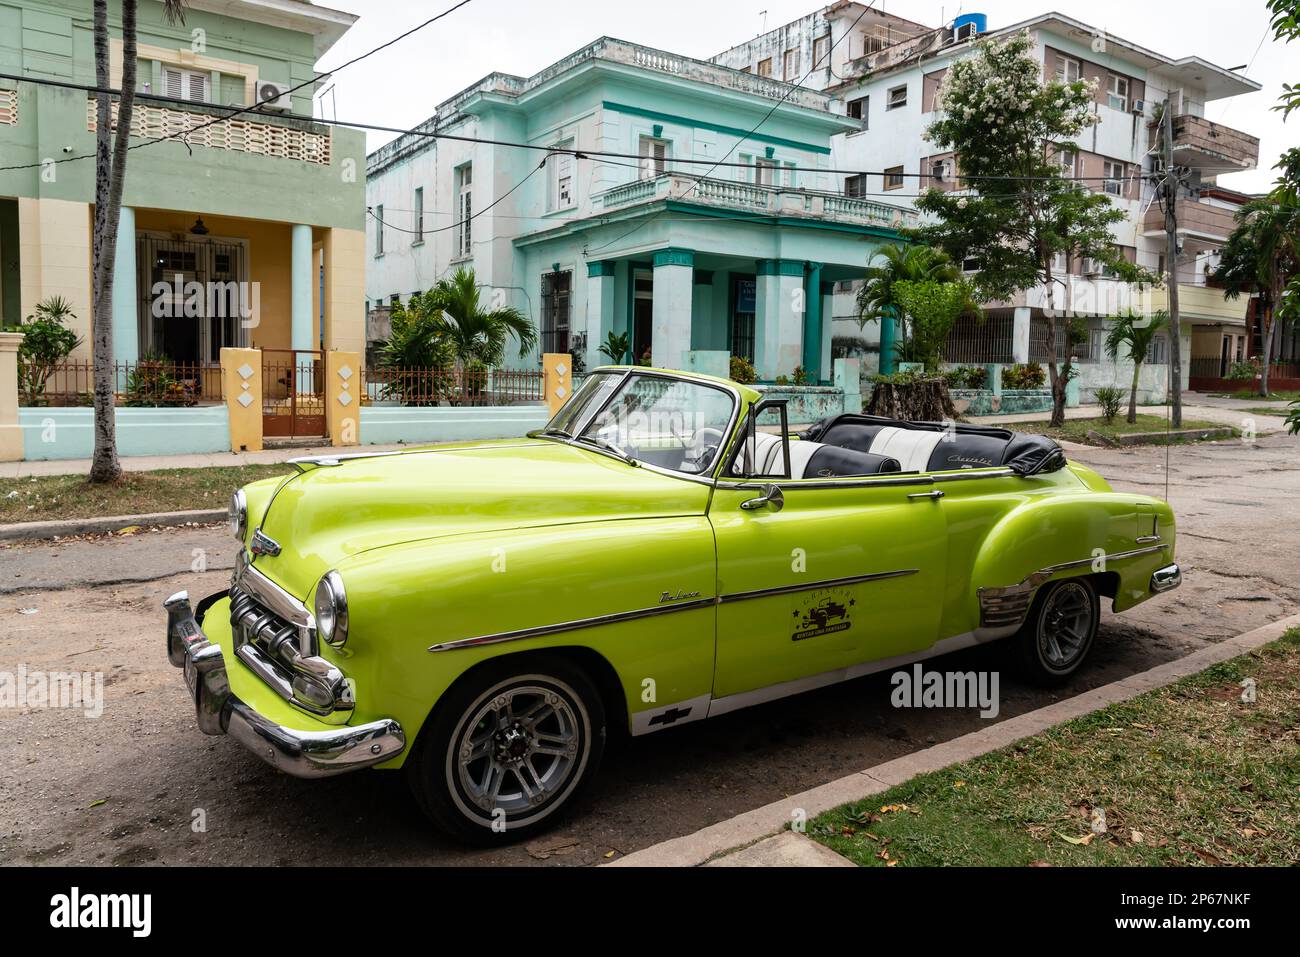 Verde open top Chevrolet auto classica parcheggiata in periferia, l'Avana, Cuba, Indie Occidentali, Caraibi, America Centrale Foto Stock